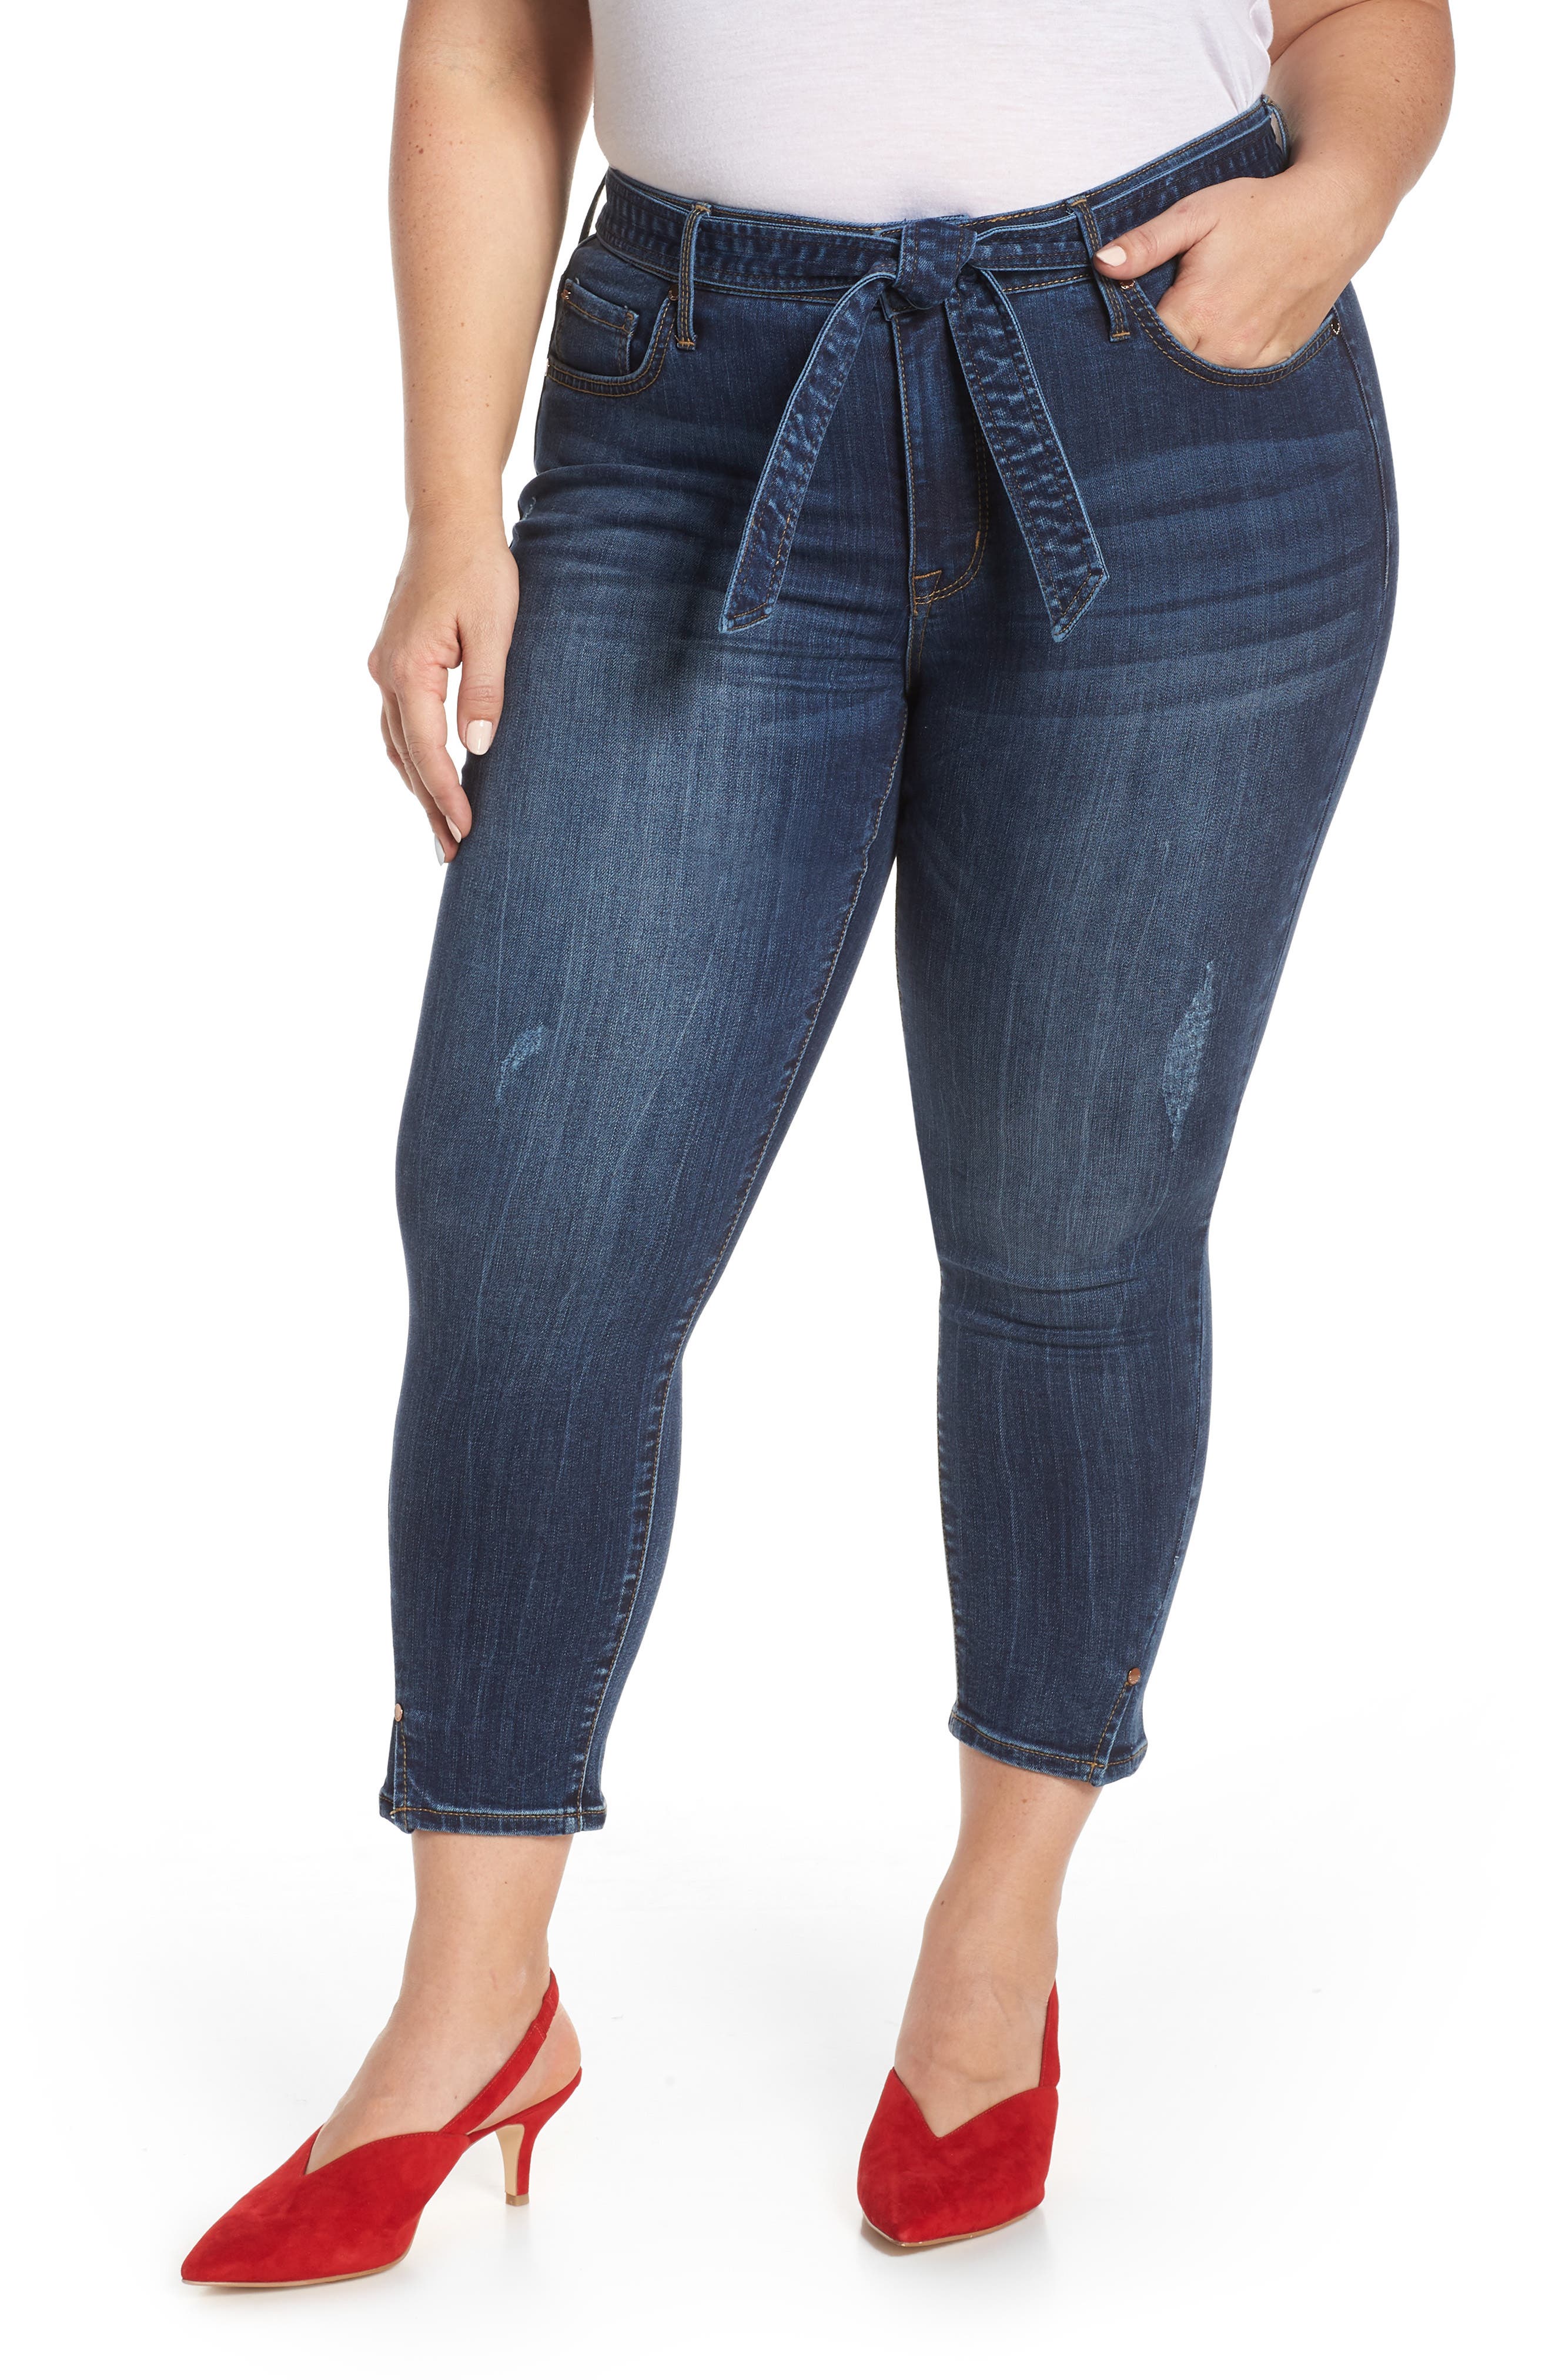 Seven Jeans Plus Size Flash Sales, 59% OFF | www.pegasusaerogroup.com